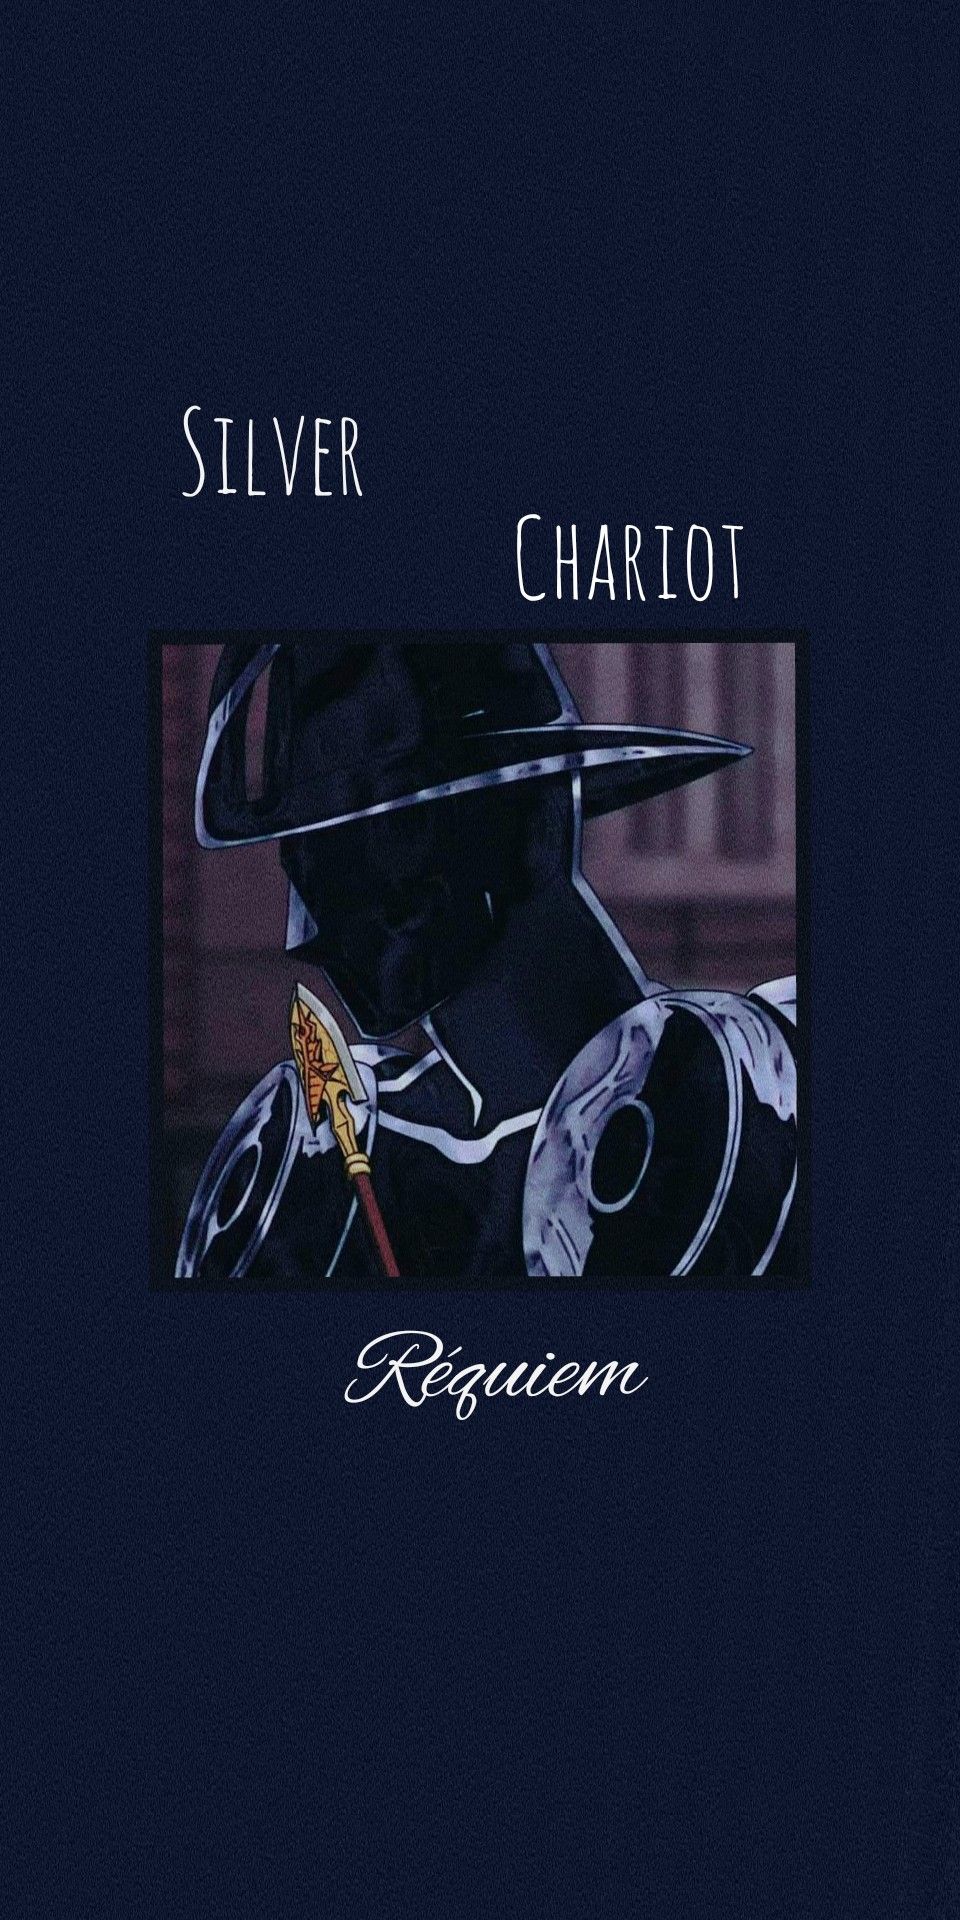 Silver Chariot Requiem wallpaper by MorexEren - Download on ZEDGE™